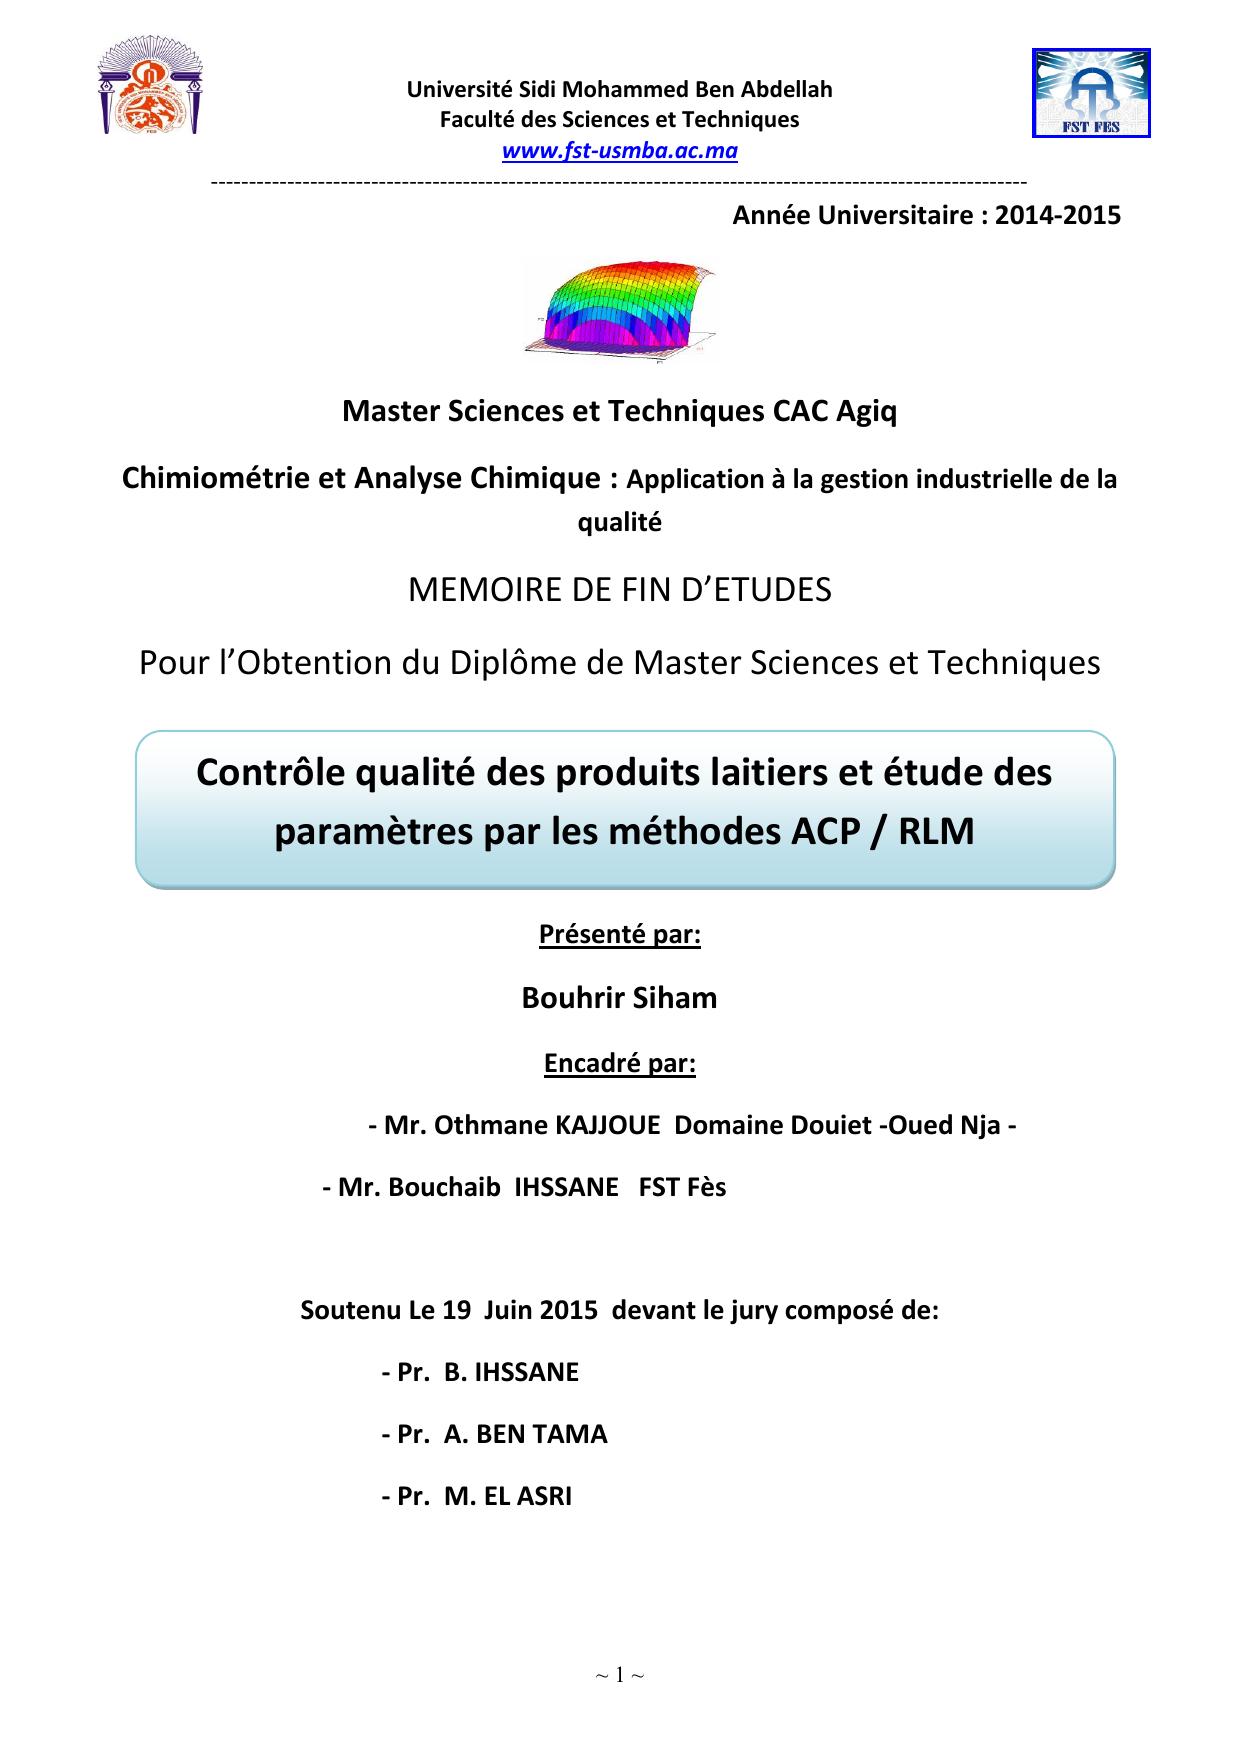 Contrôle qualité des produits laitiers et étude des paramètres par les méthodes ACP / RLM